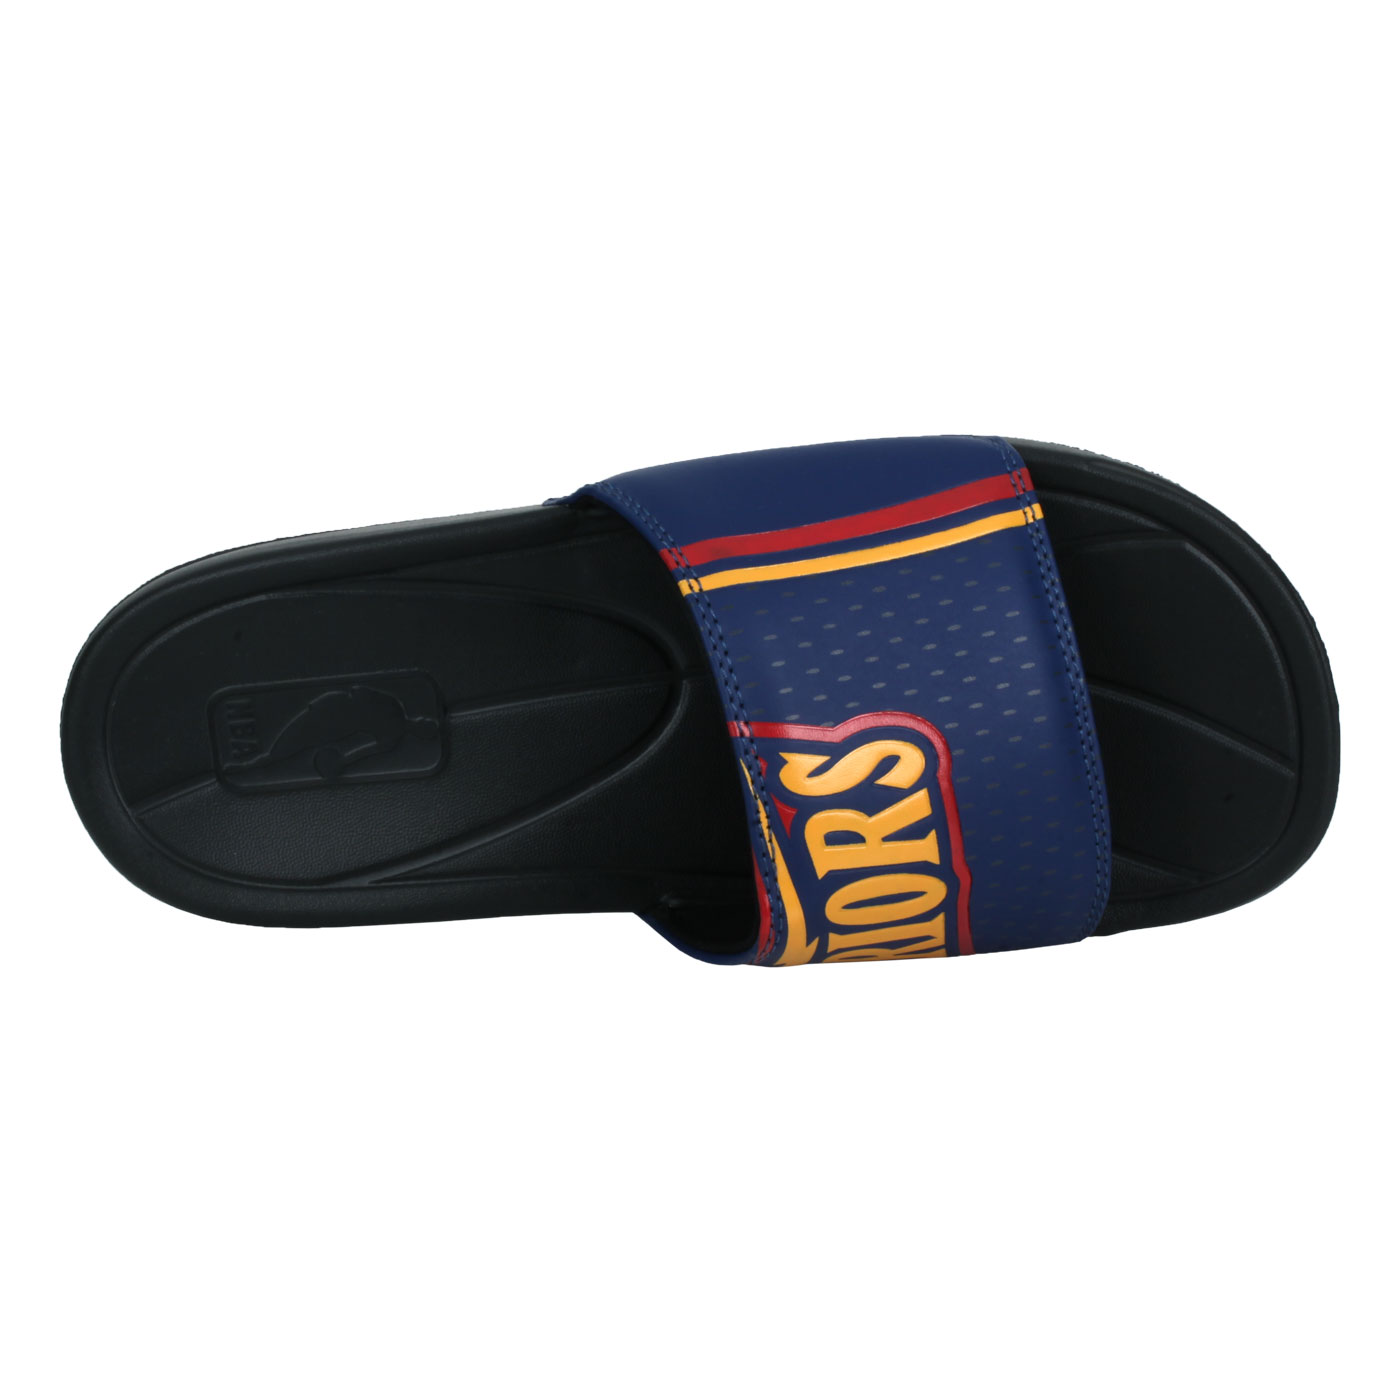 NBA 限量-隊徽拖鞋-勇士隊 DSGSW-BLK01 - 丈青黃紅